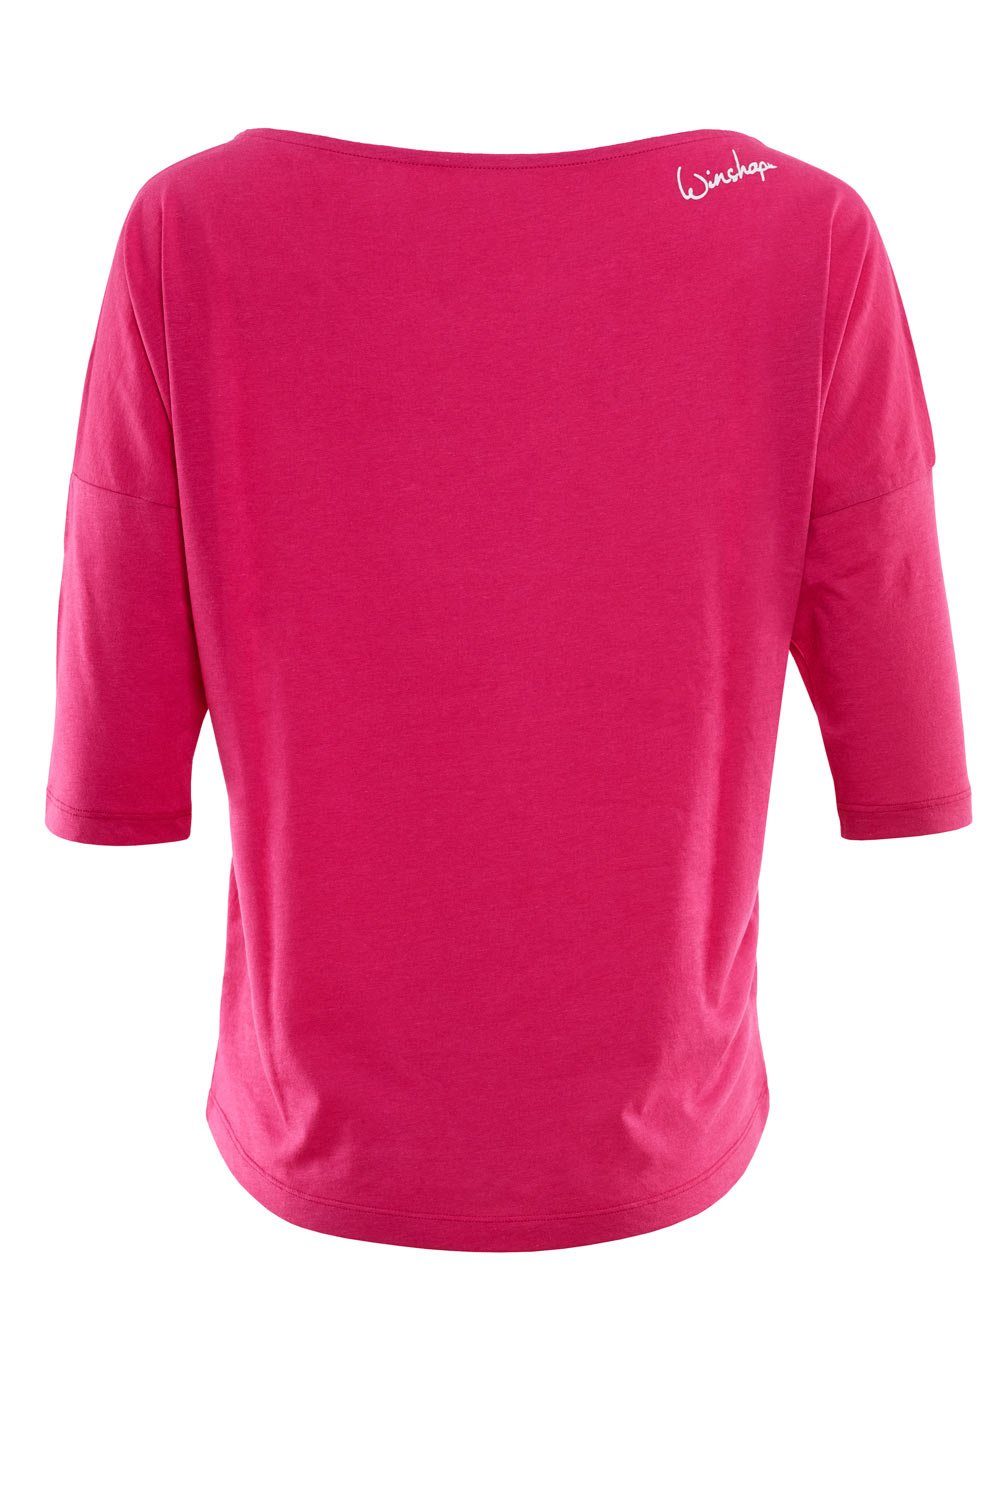 Winshape 3/4-Arm-Shirt MCS001 ultra leicht weiß mit weißem - pink Glitzer-Aufdruck deep glitzer